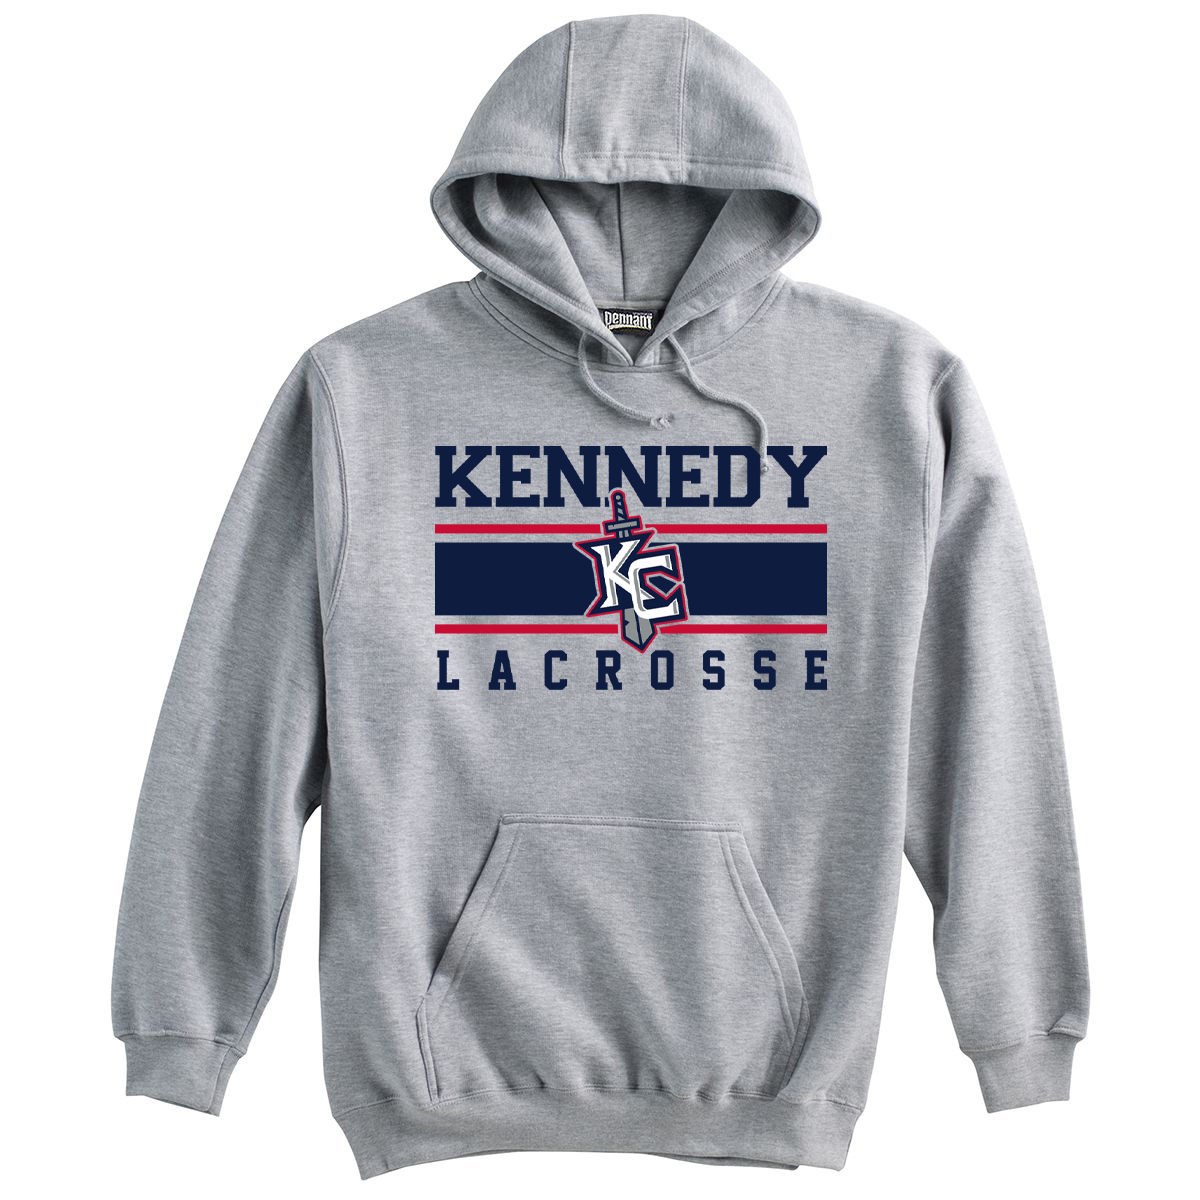 Kennedy Catholic HS Sweatshirt